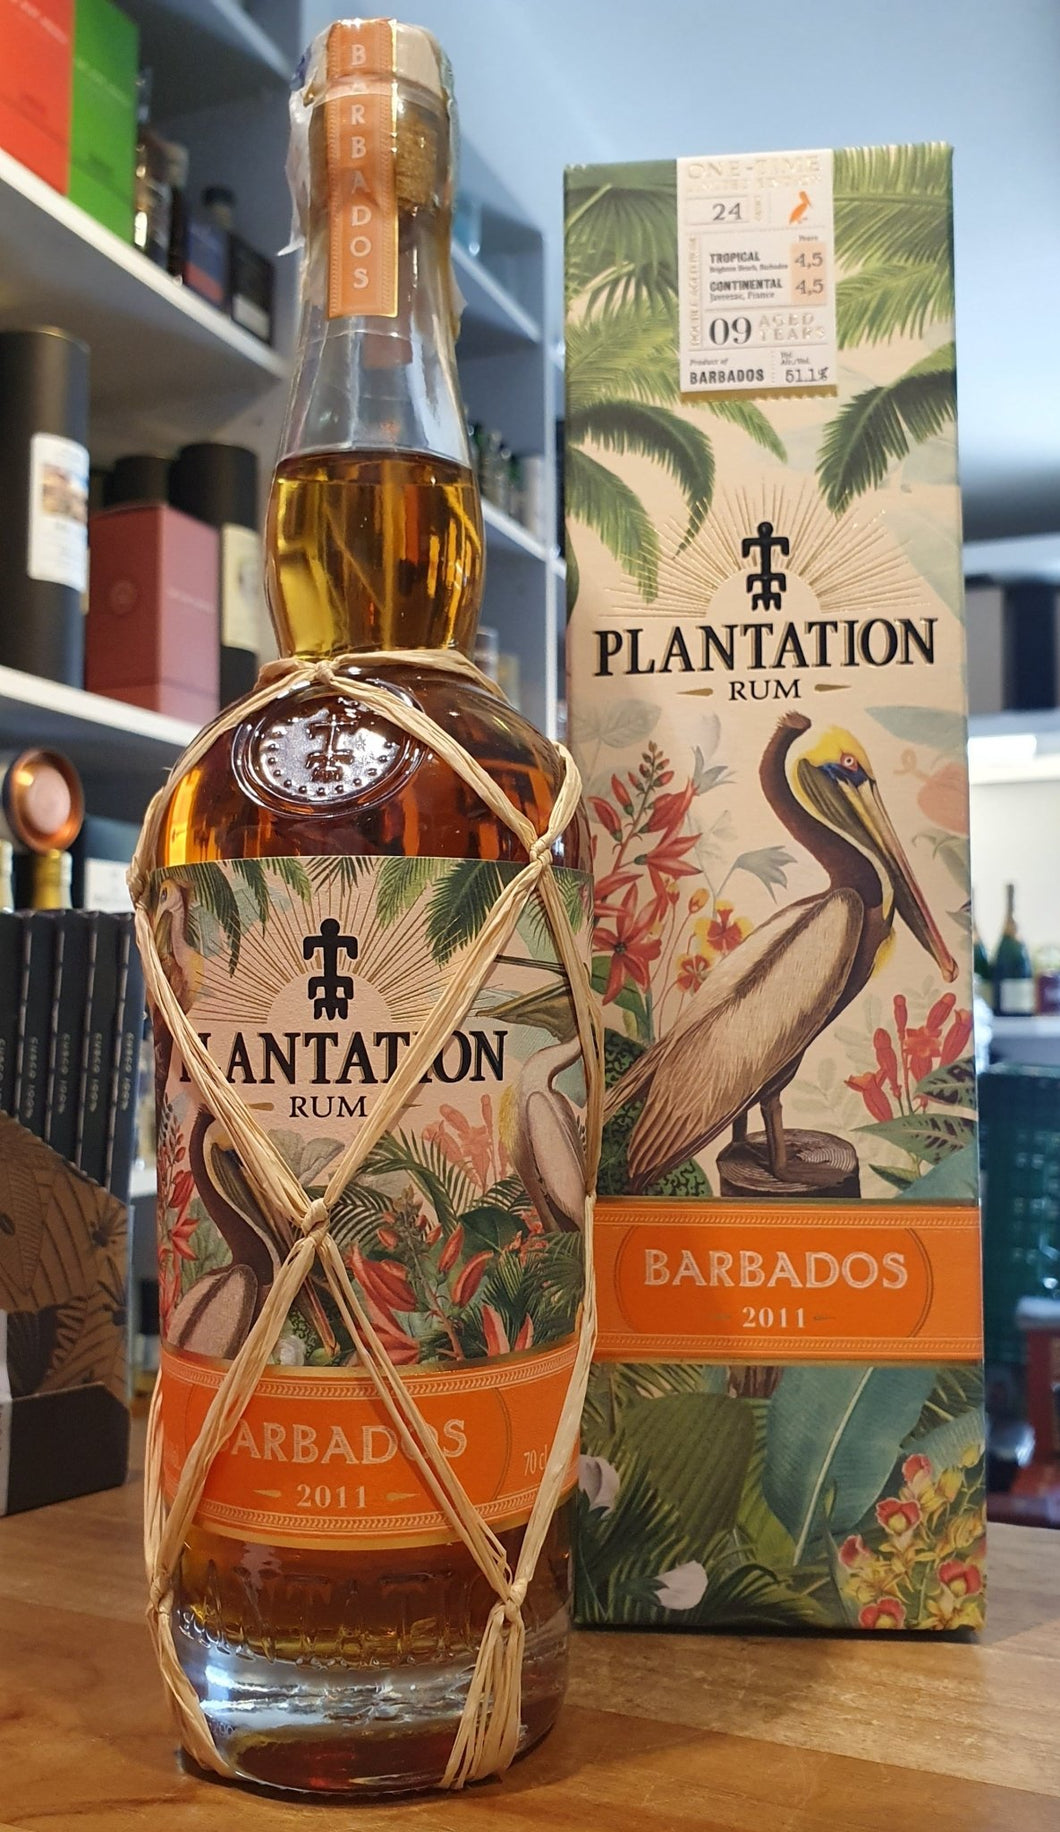 Plantation one time Barbados 2011 2020 0,7l 51,1% vol. limited Edition Rum Sonderedition limitiert   limitiert auf 24 Fässer mit x Flaschen Ester 120 VC: 306 Dosage 0